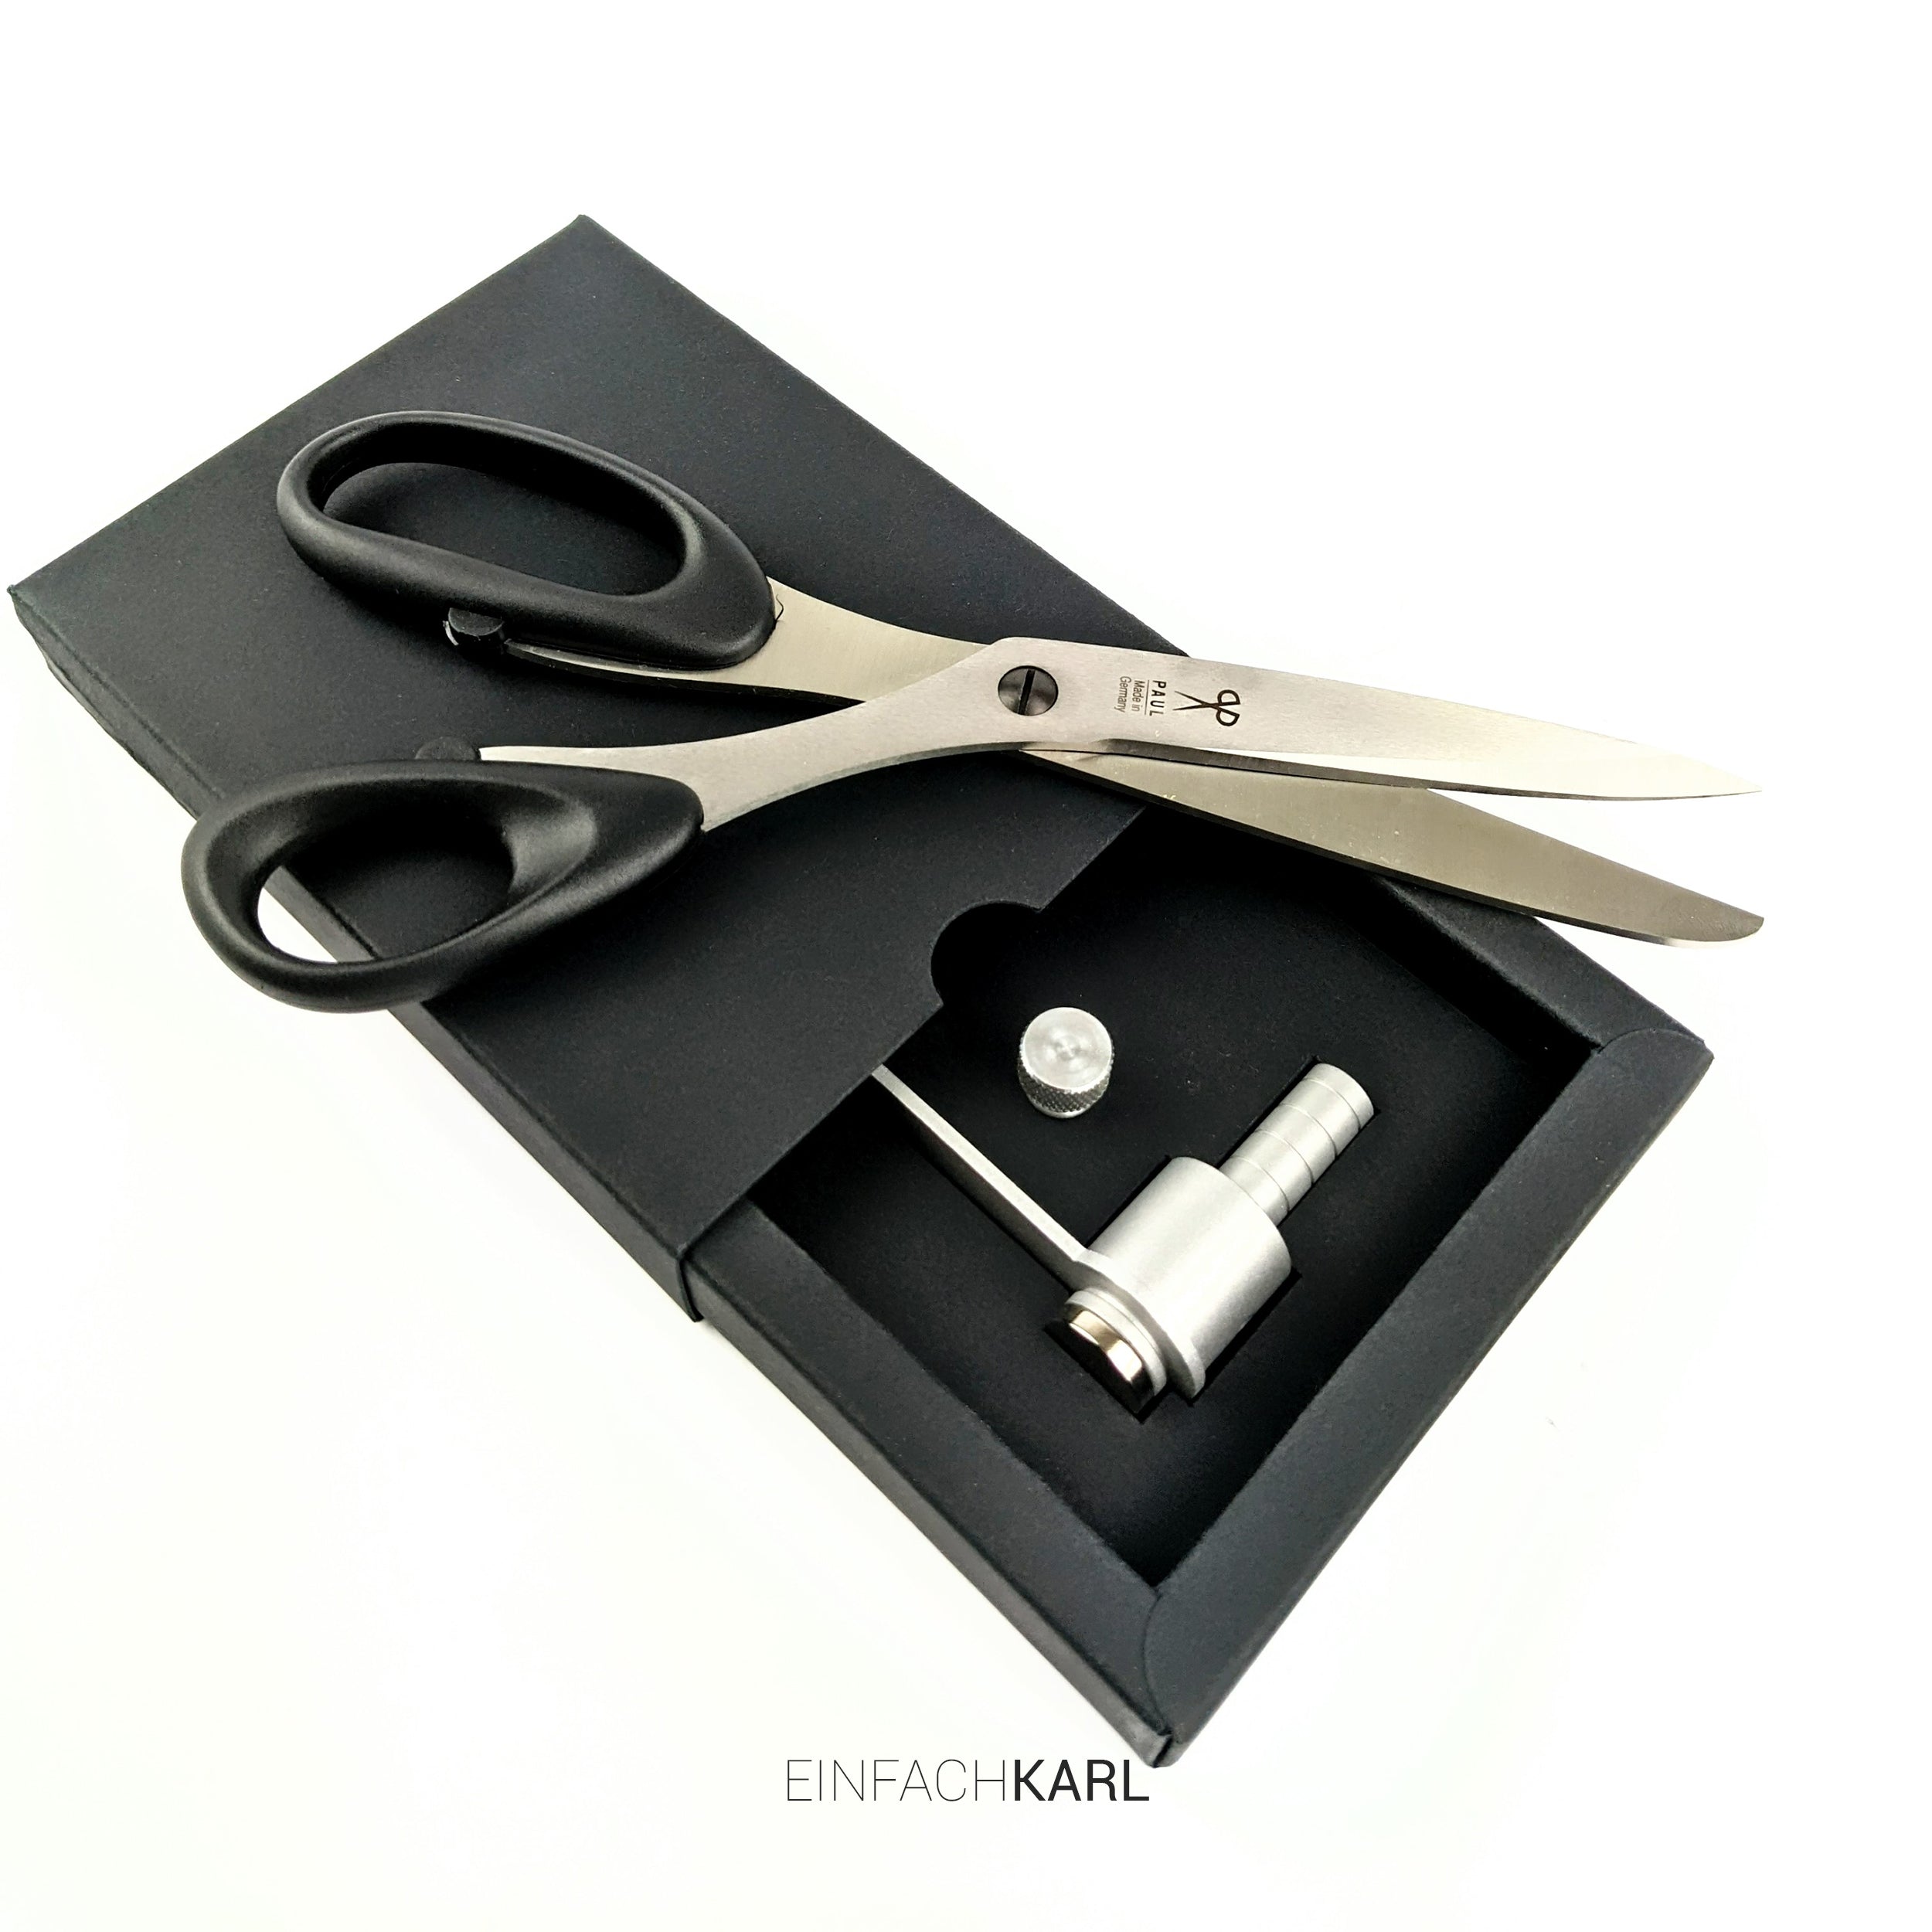 Small scissors set (Silver Edition)